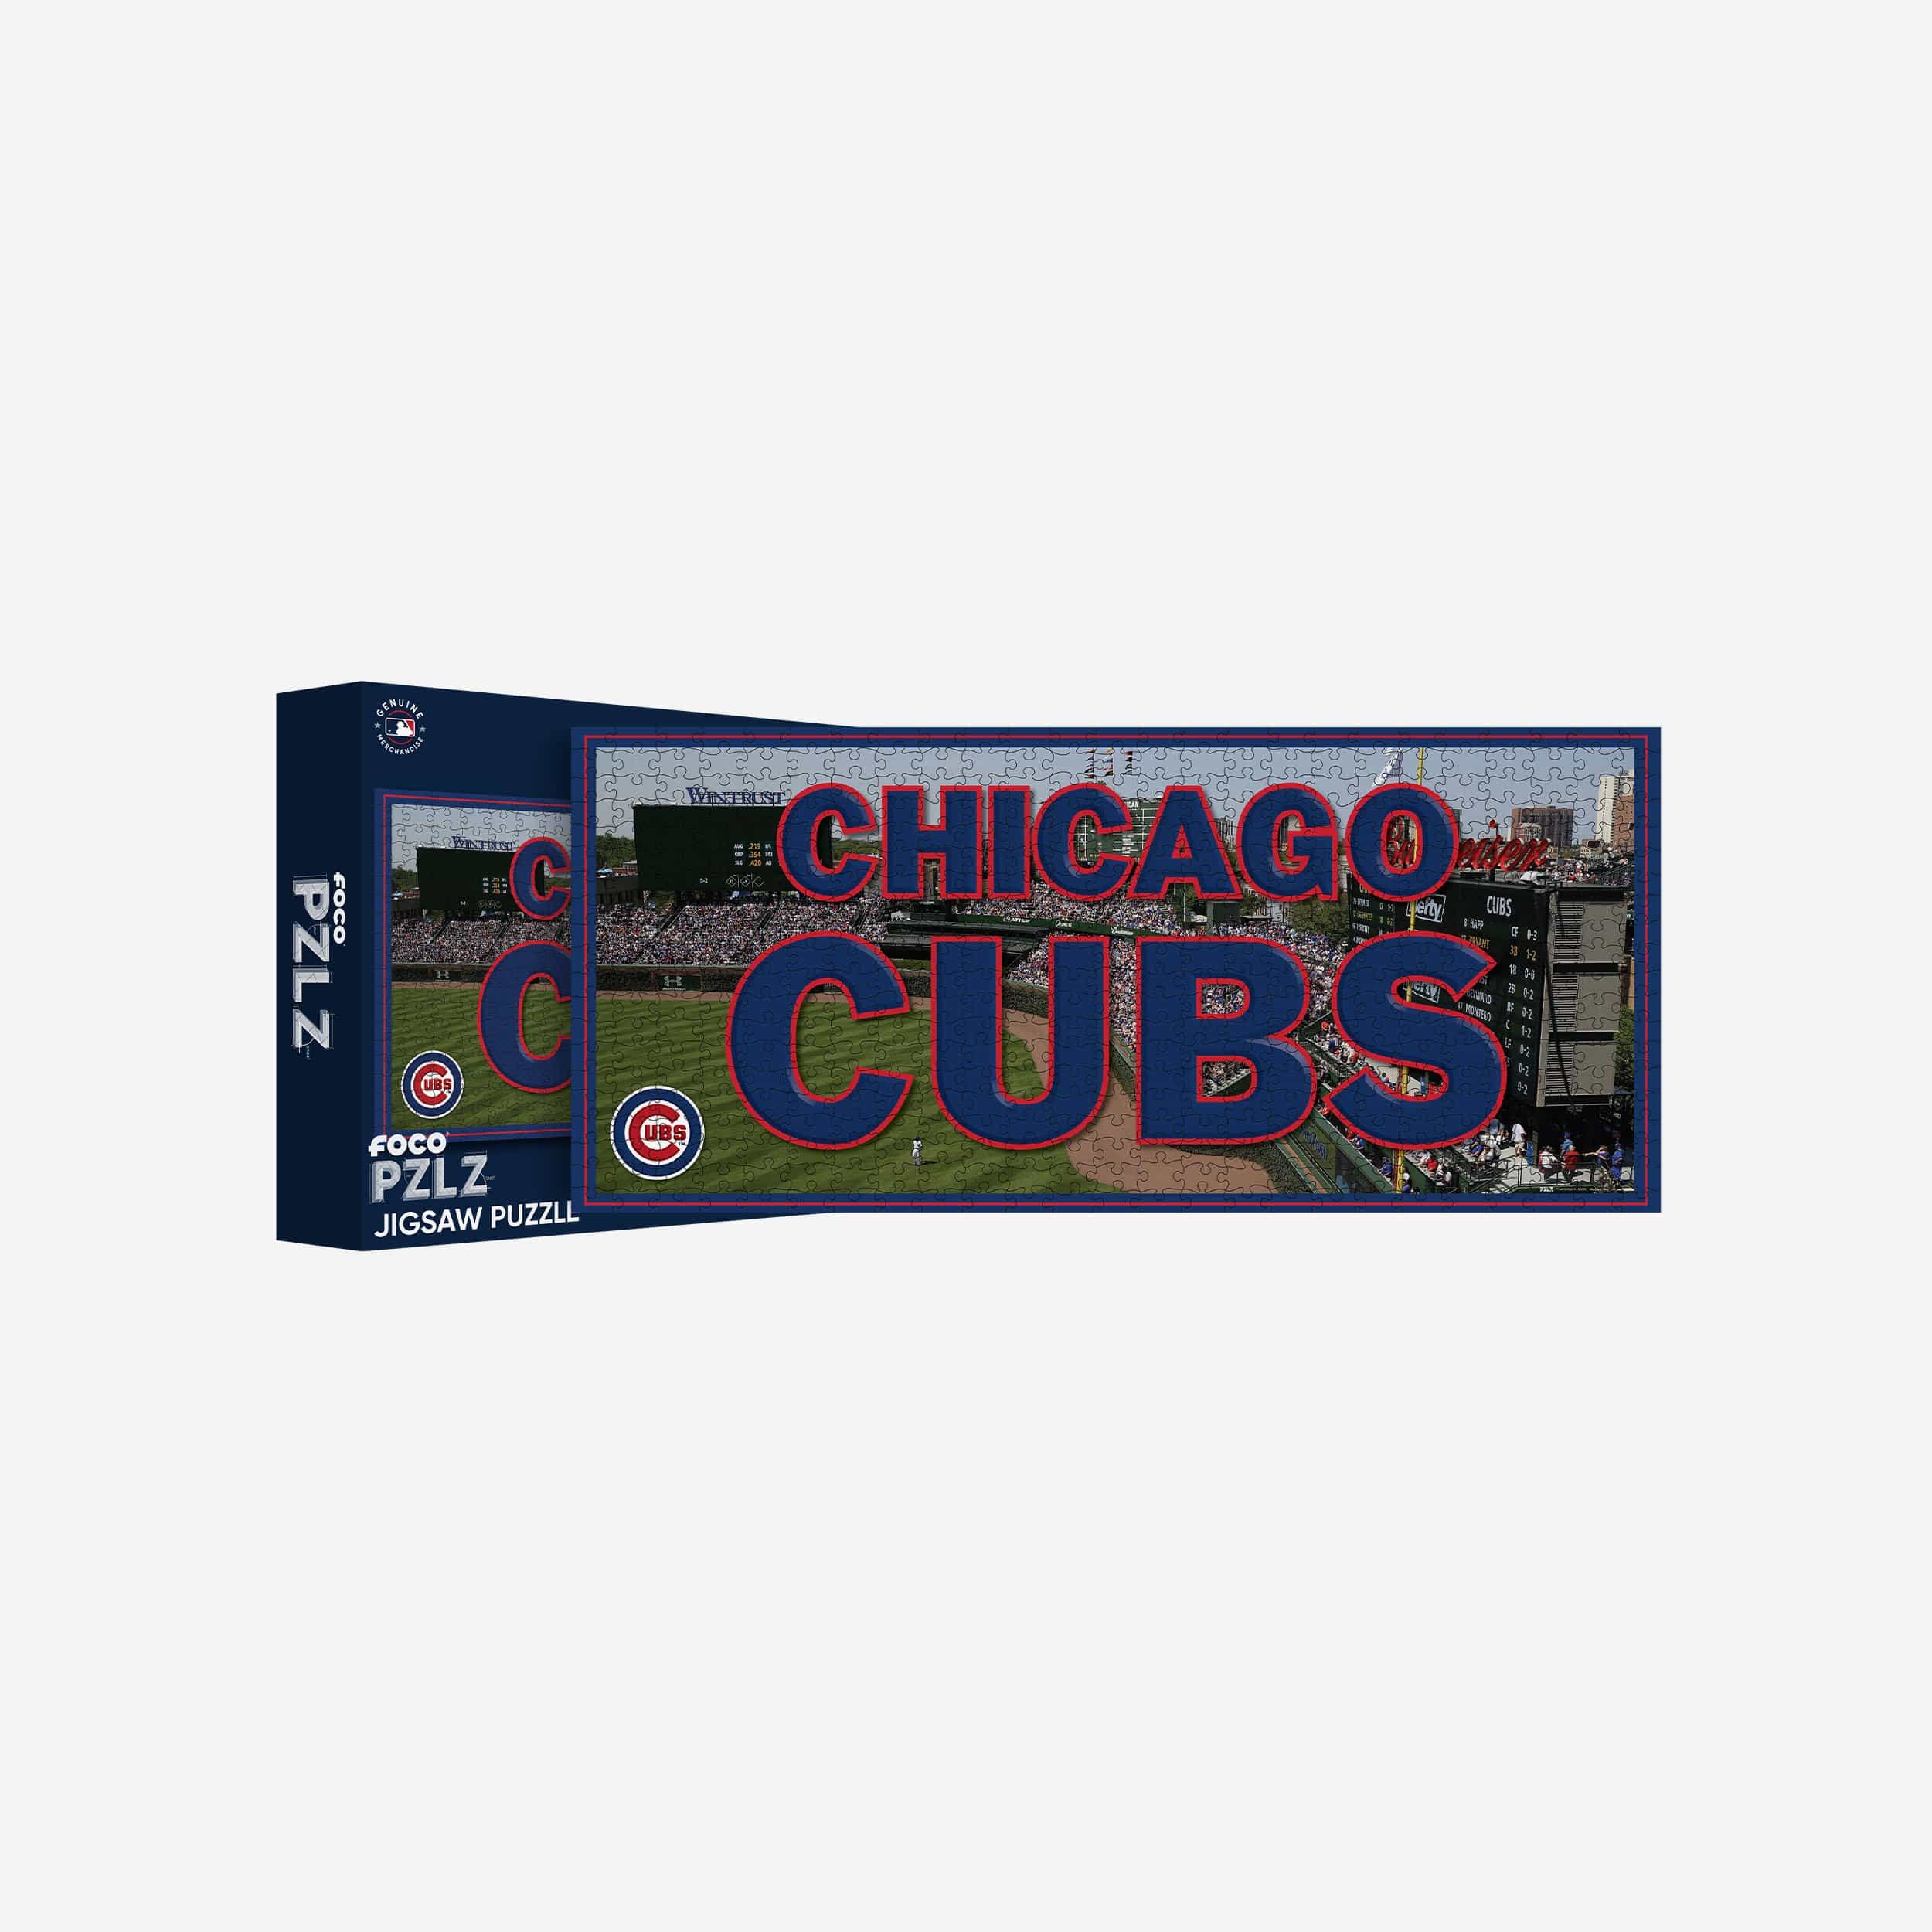 FOCO Chicago Cubs Wrigley Field 500 Piece Stadiumscape Jigsaw Puzzle PZLZ -